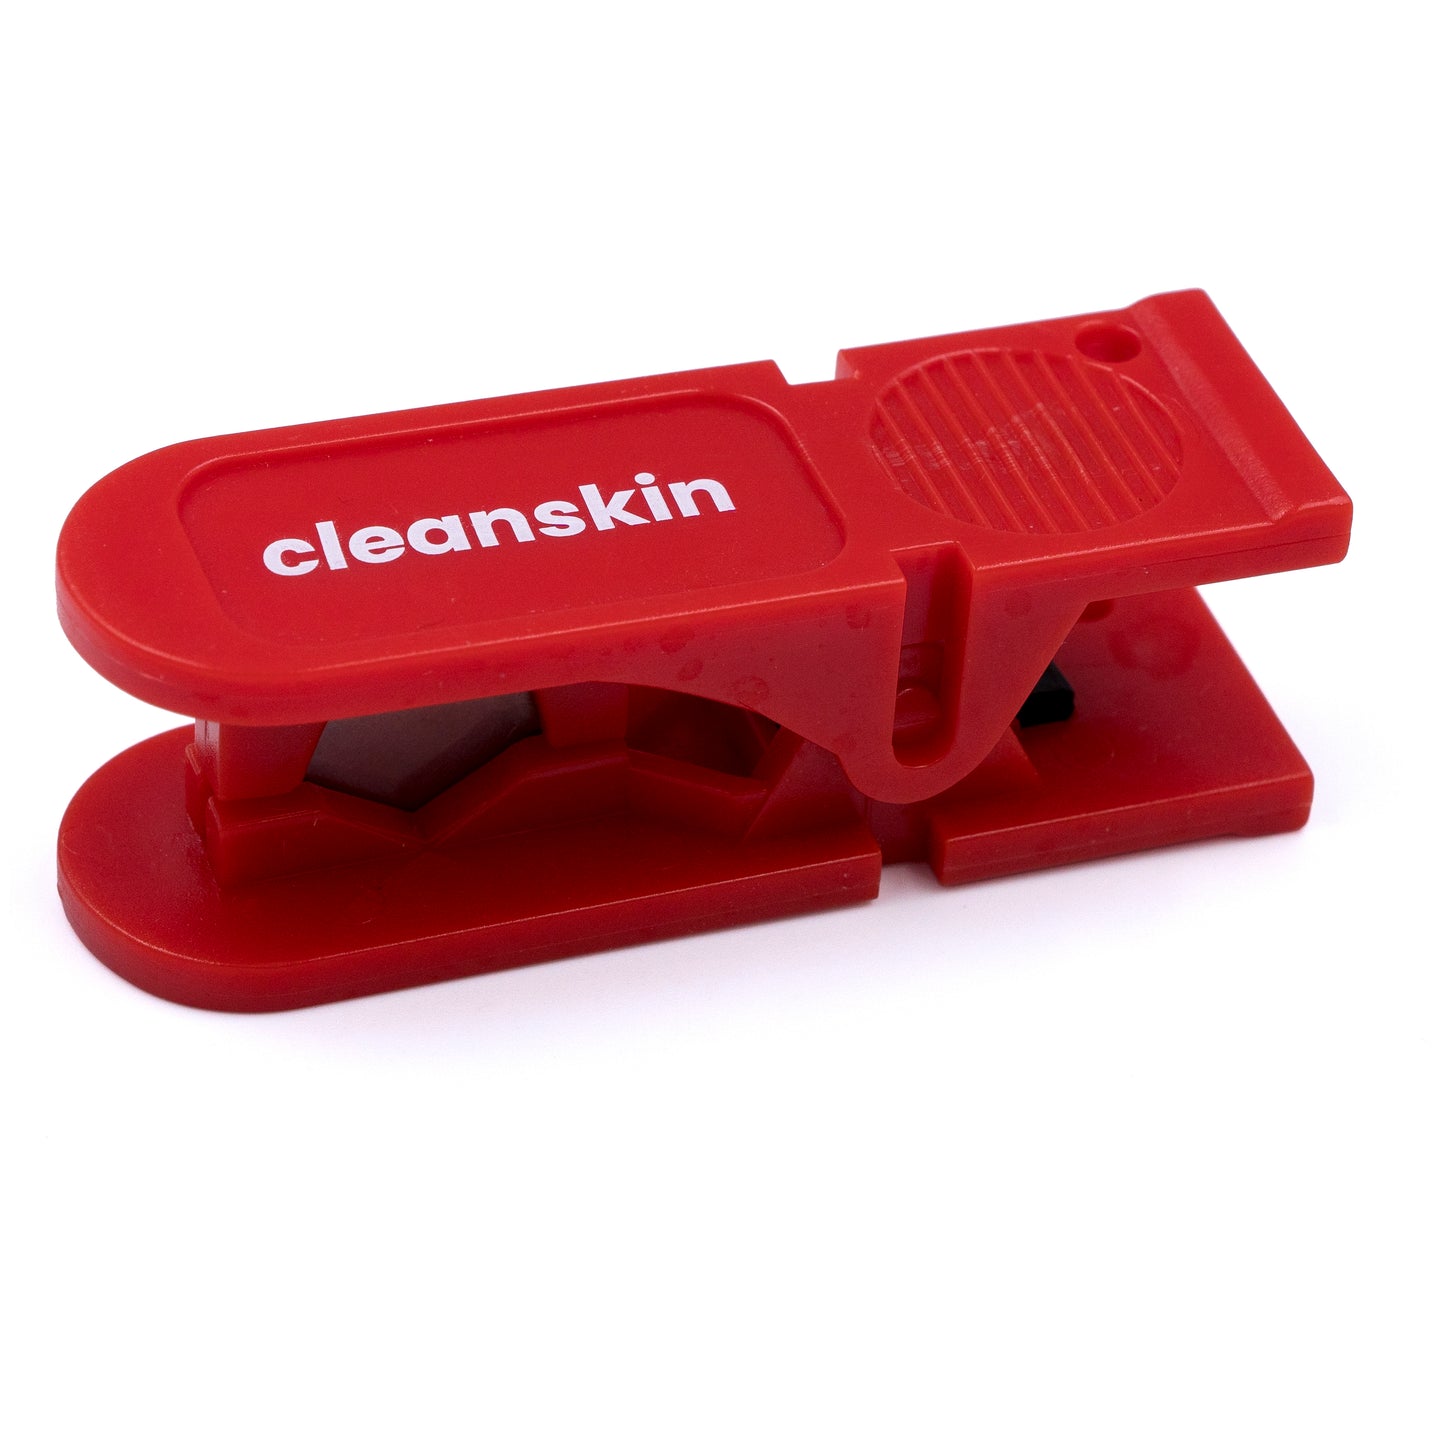 Cleanskin Hydraulic Disc Brake Hose Cutter - Red